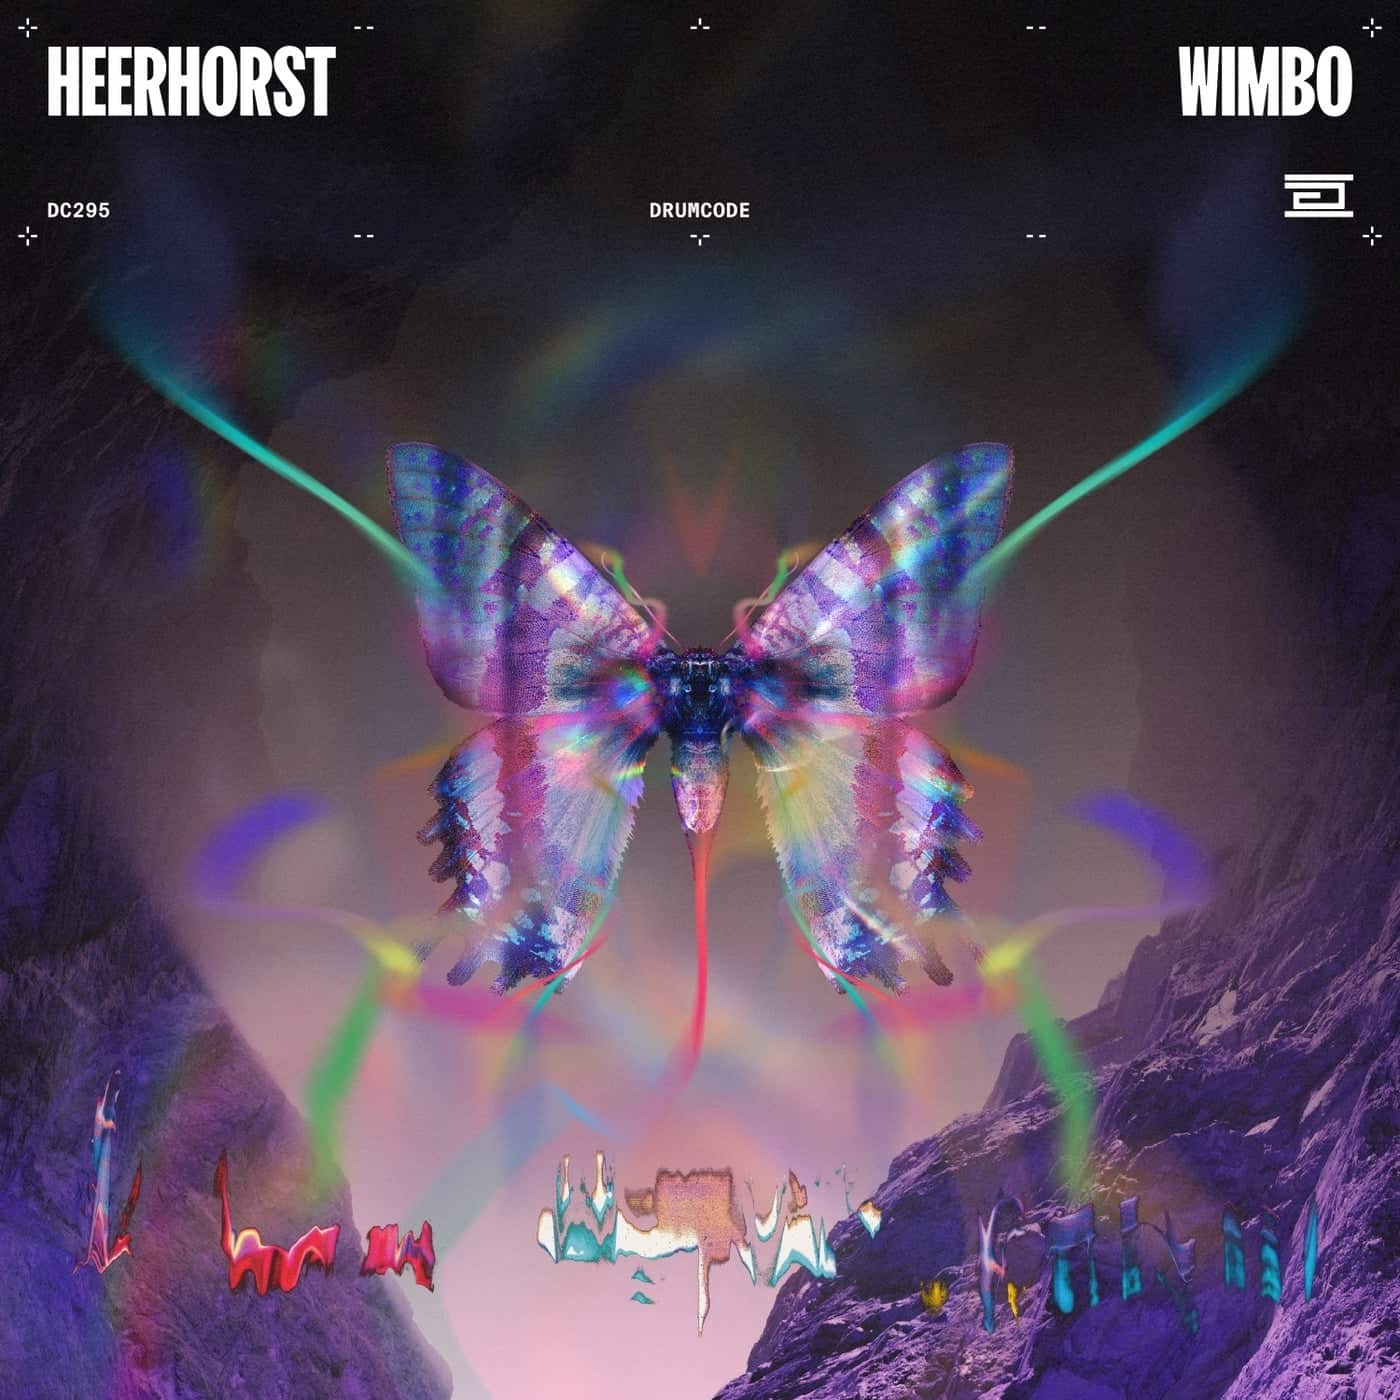 image cover: Heerhorst - Wimbo on Drumcode